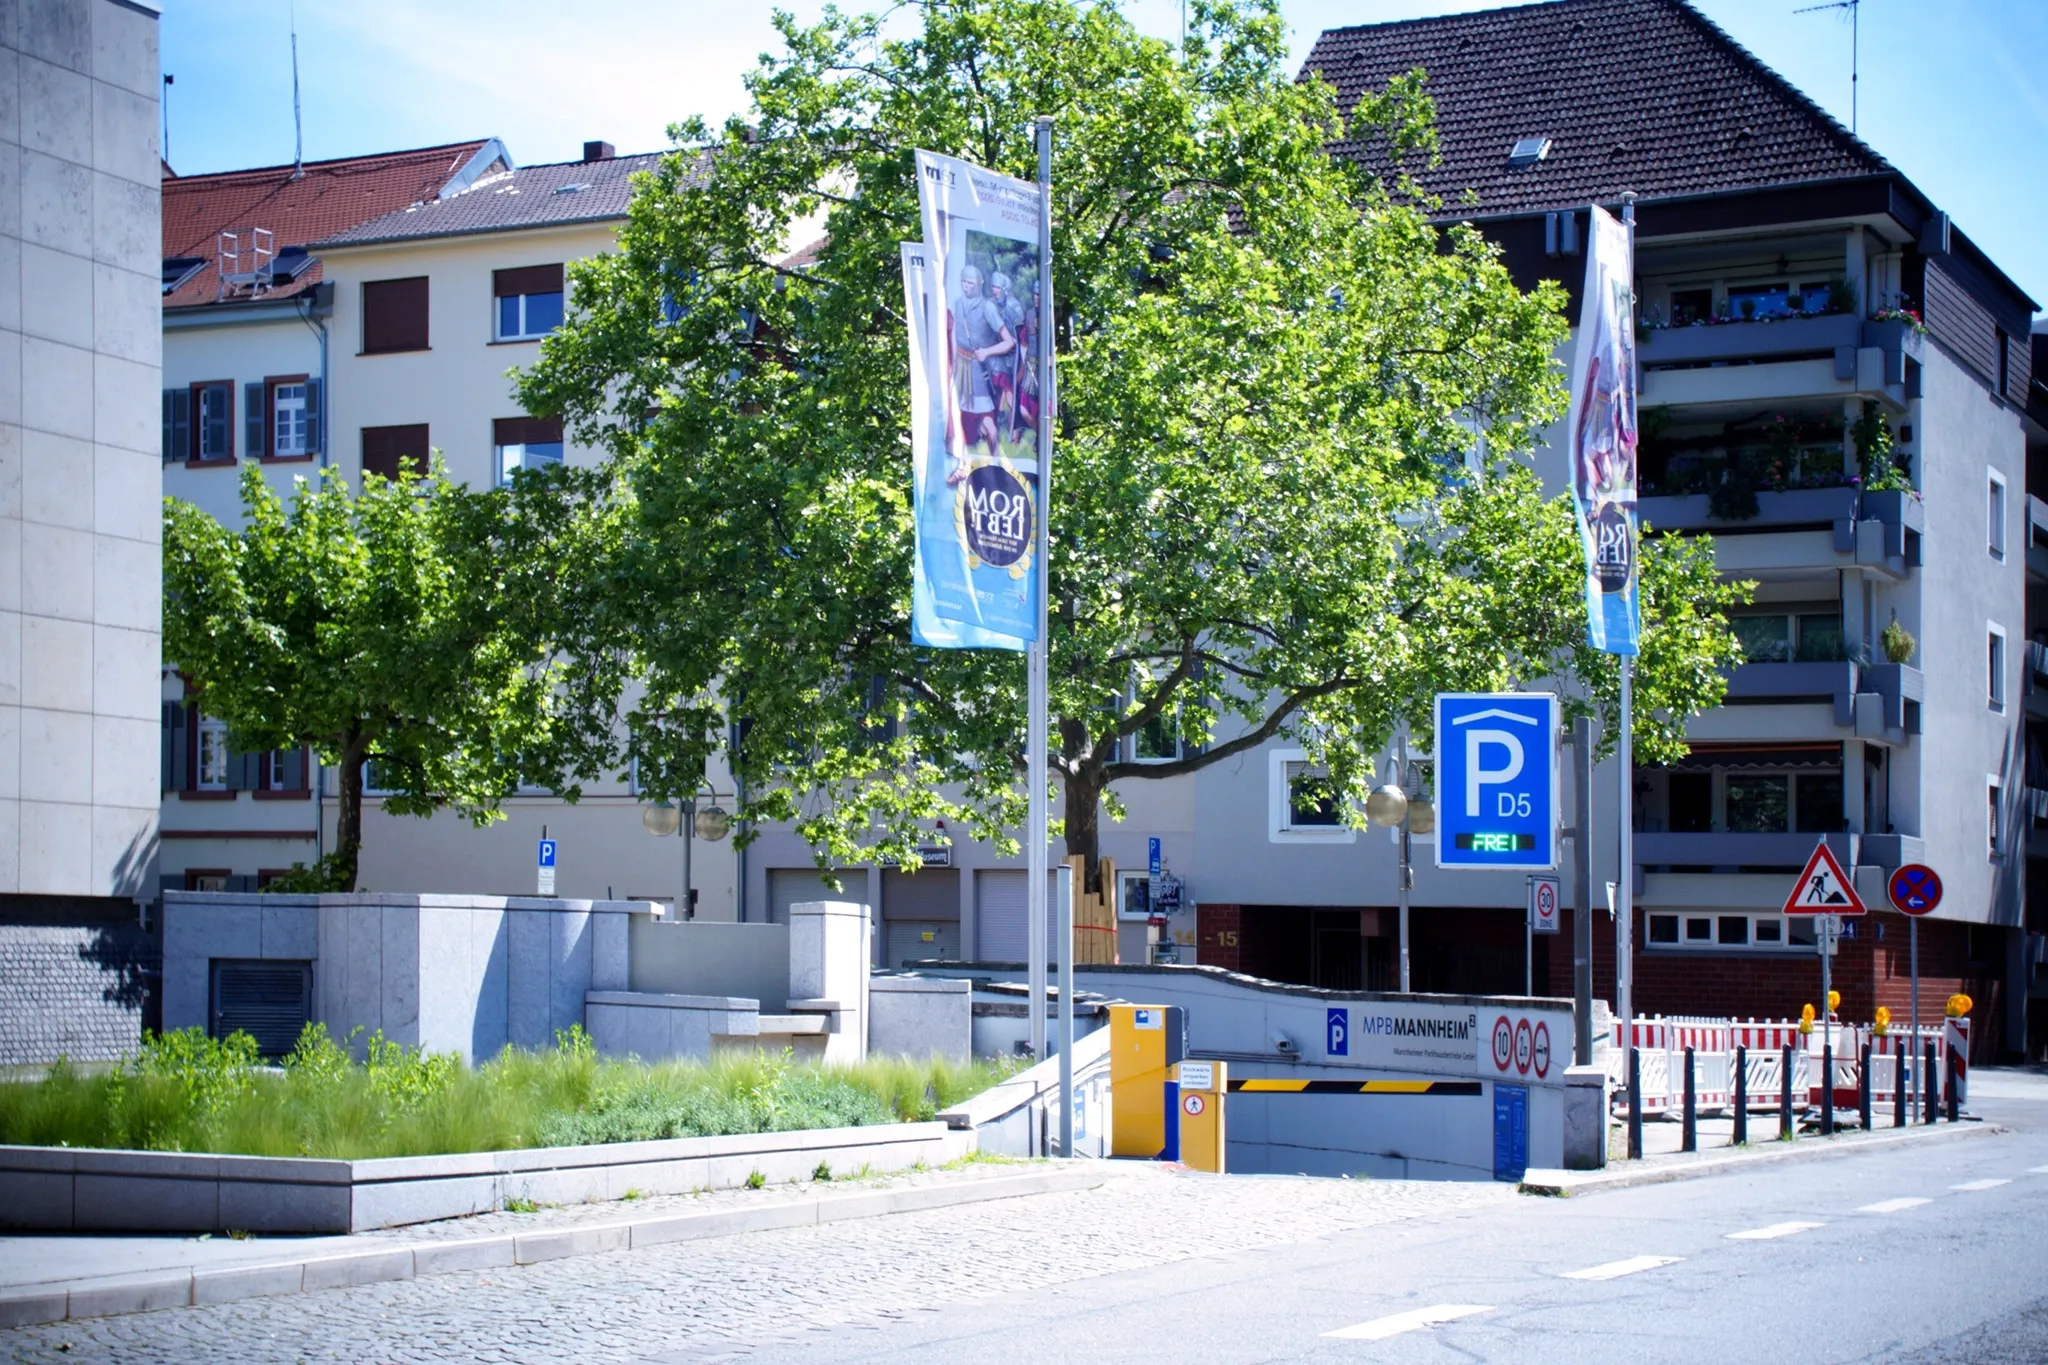 D5 Reiss-Engelhorn-Museen, Tiefgarage